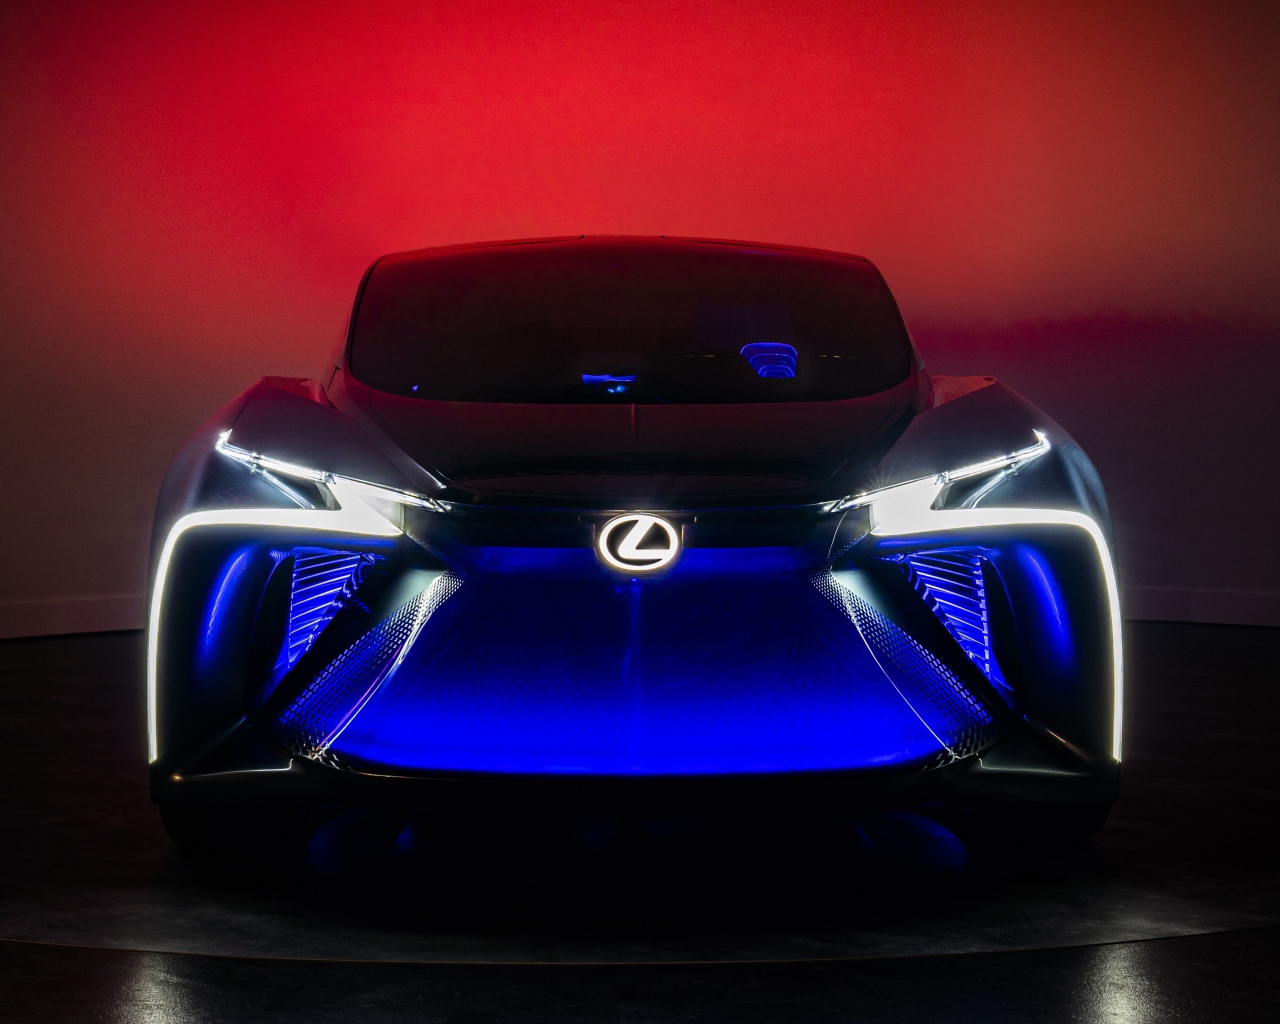 Автомобиль Lexus LF-30, 2020 года с неоновой подсветкой 